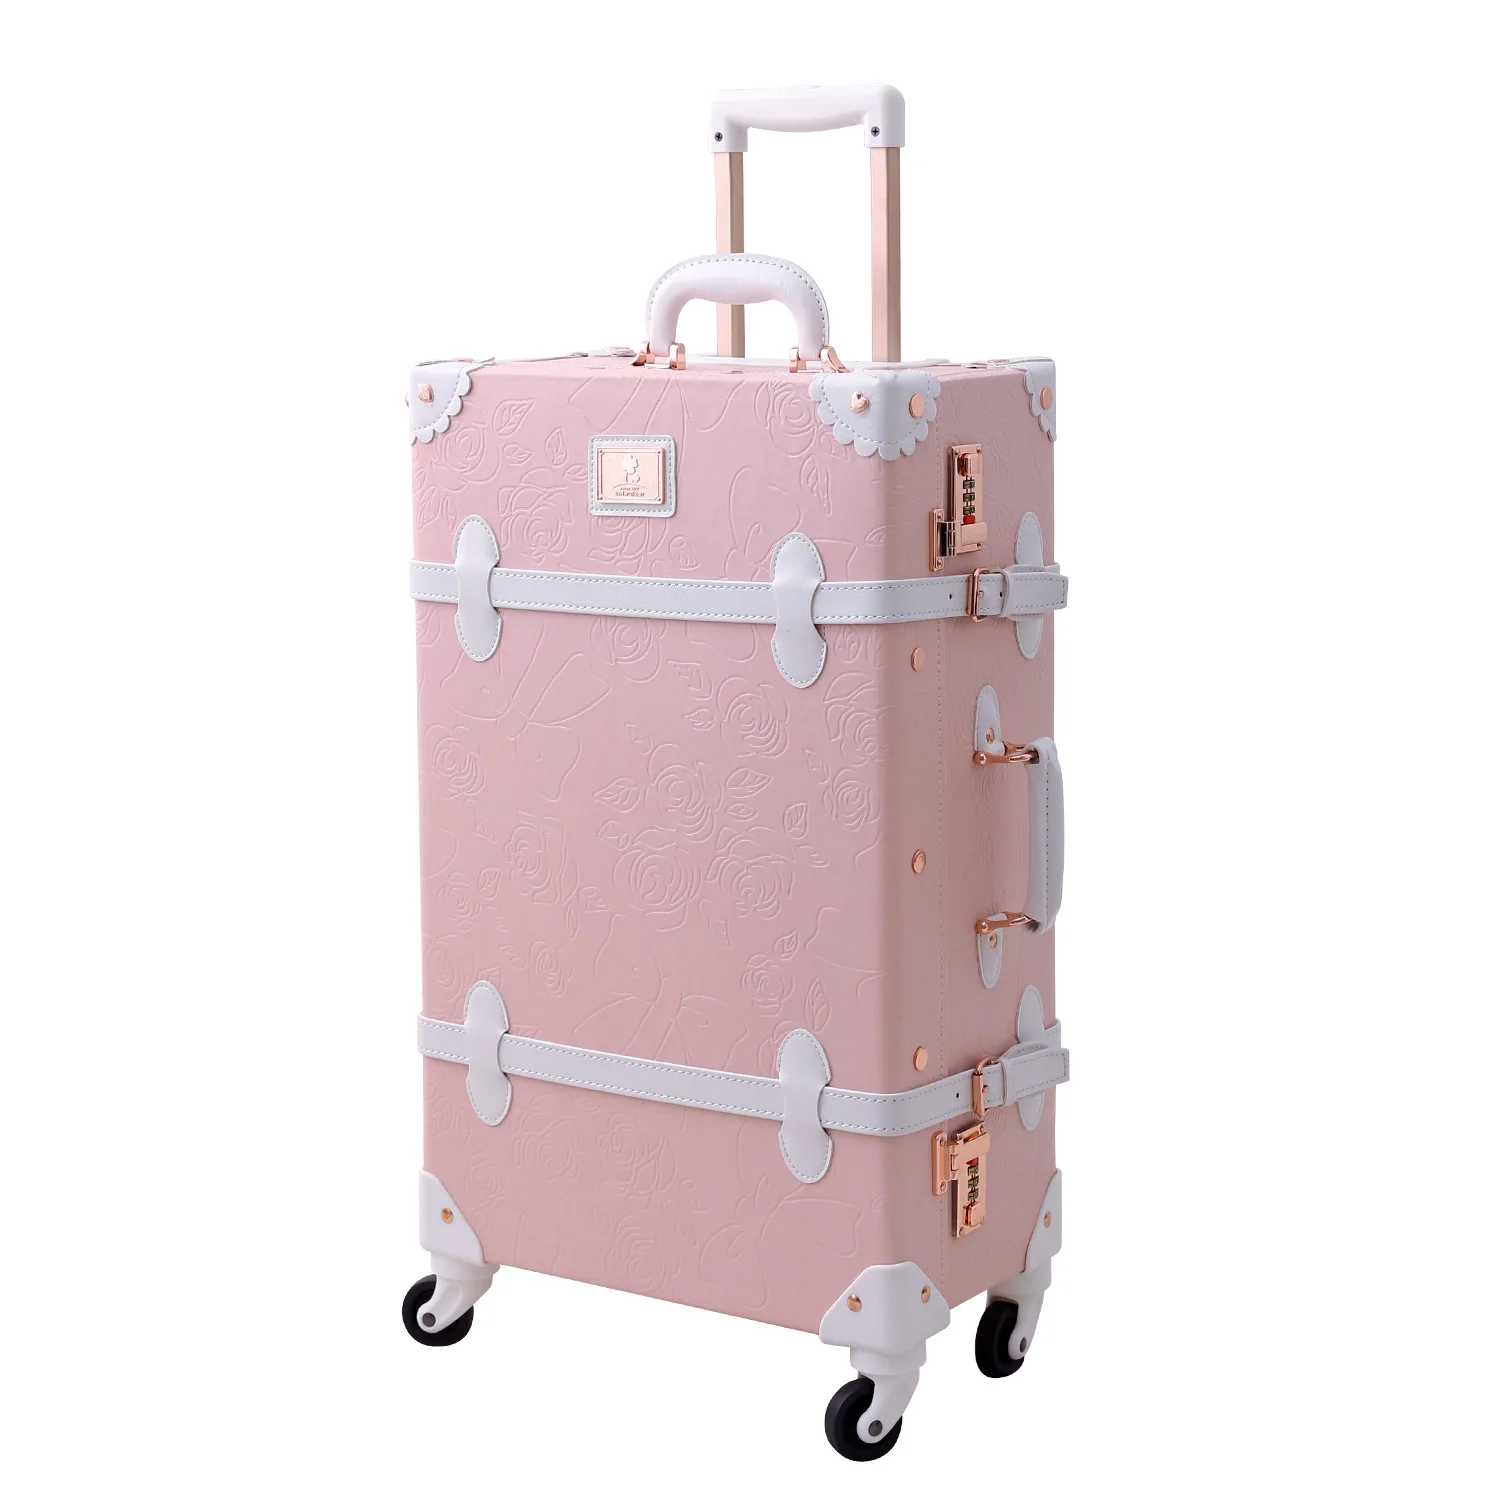 Stylish Carry On Luggage & Rolling Suitcase Sets